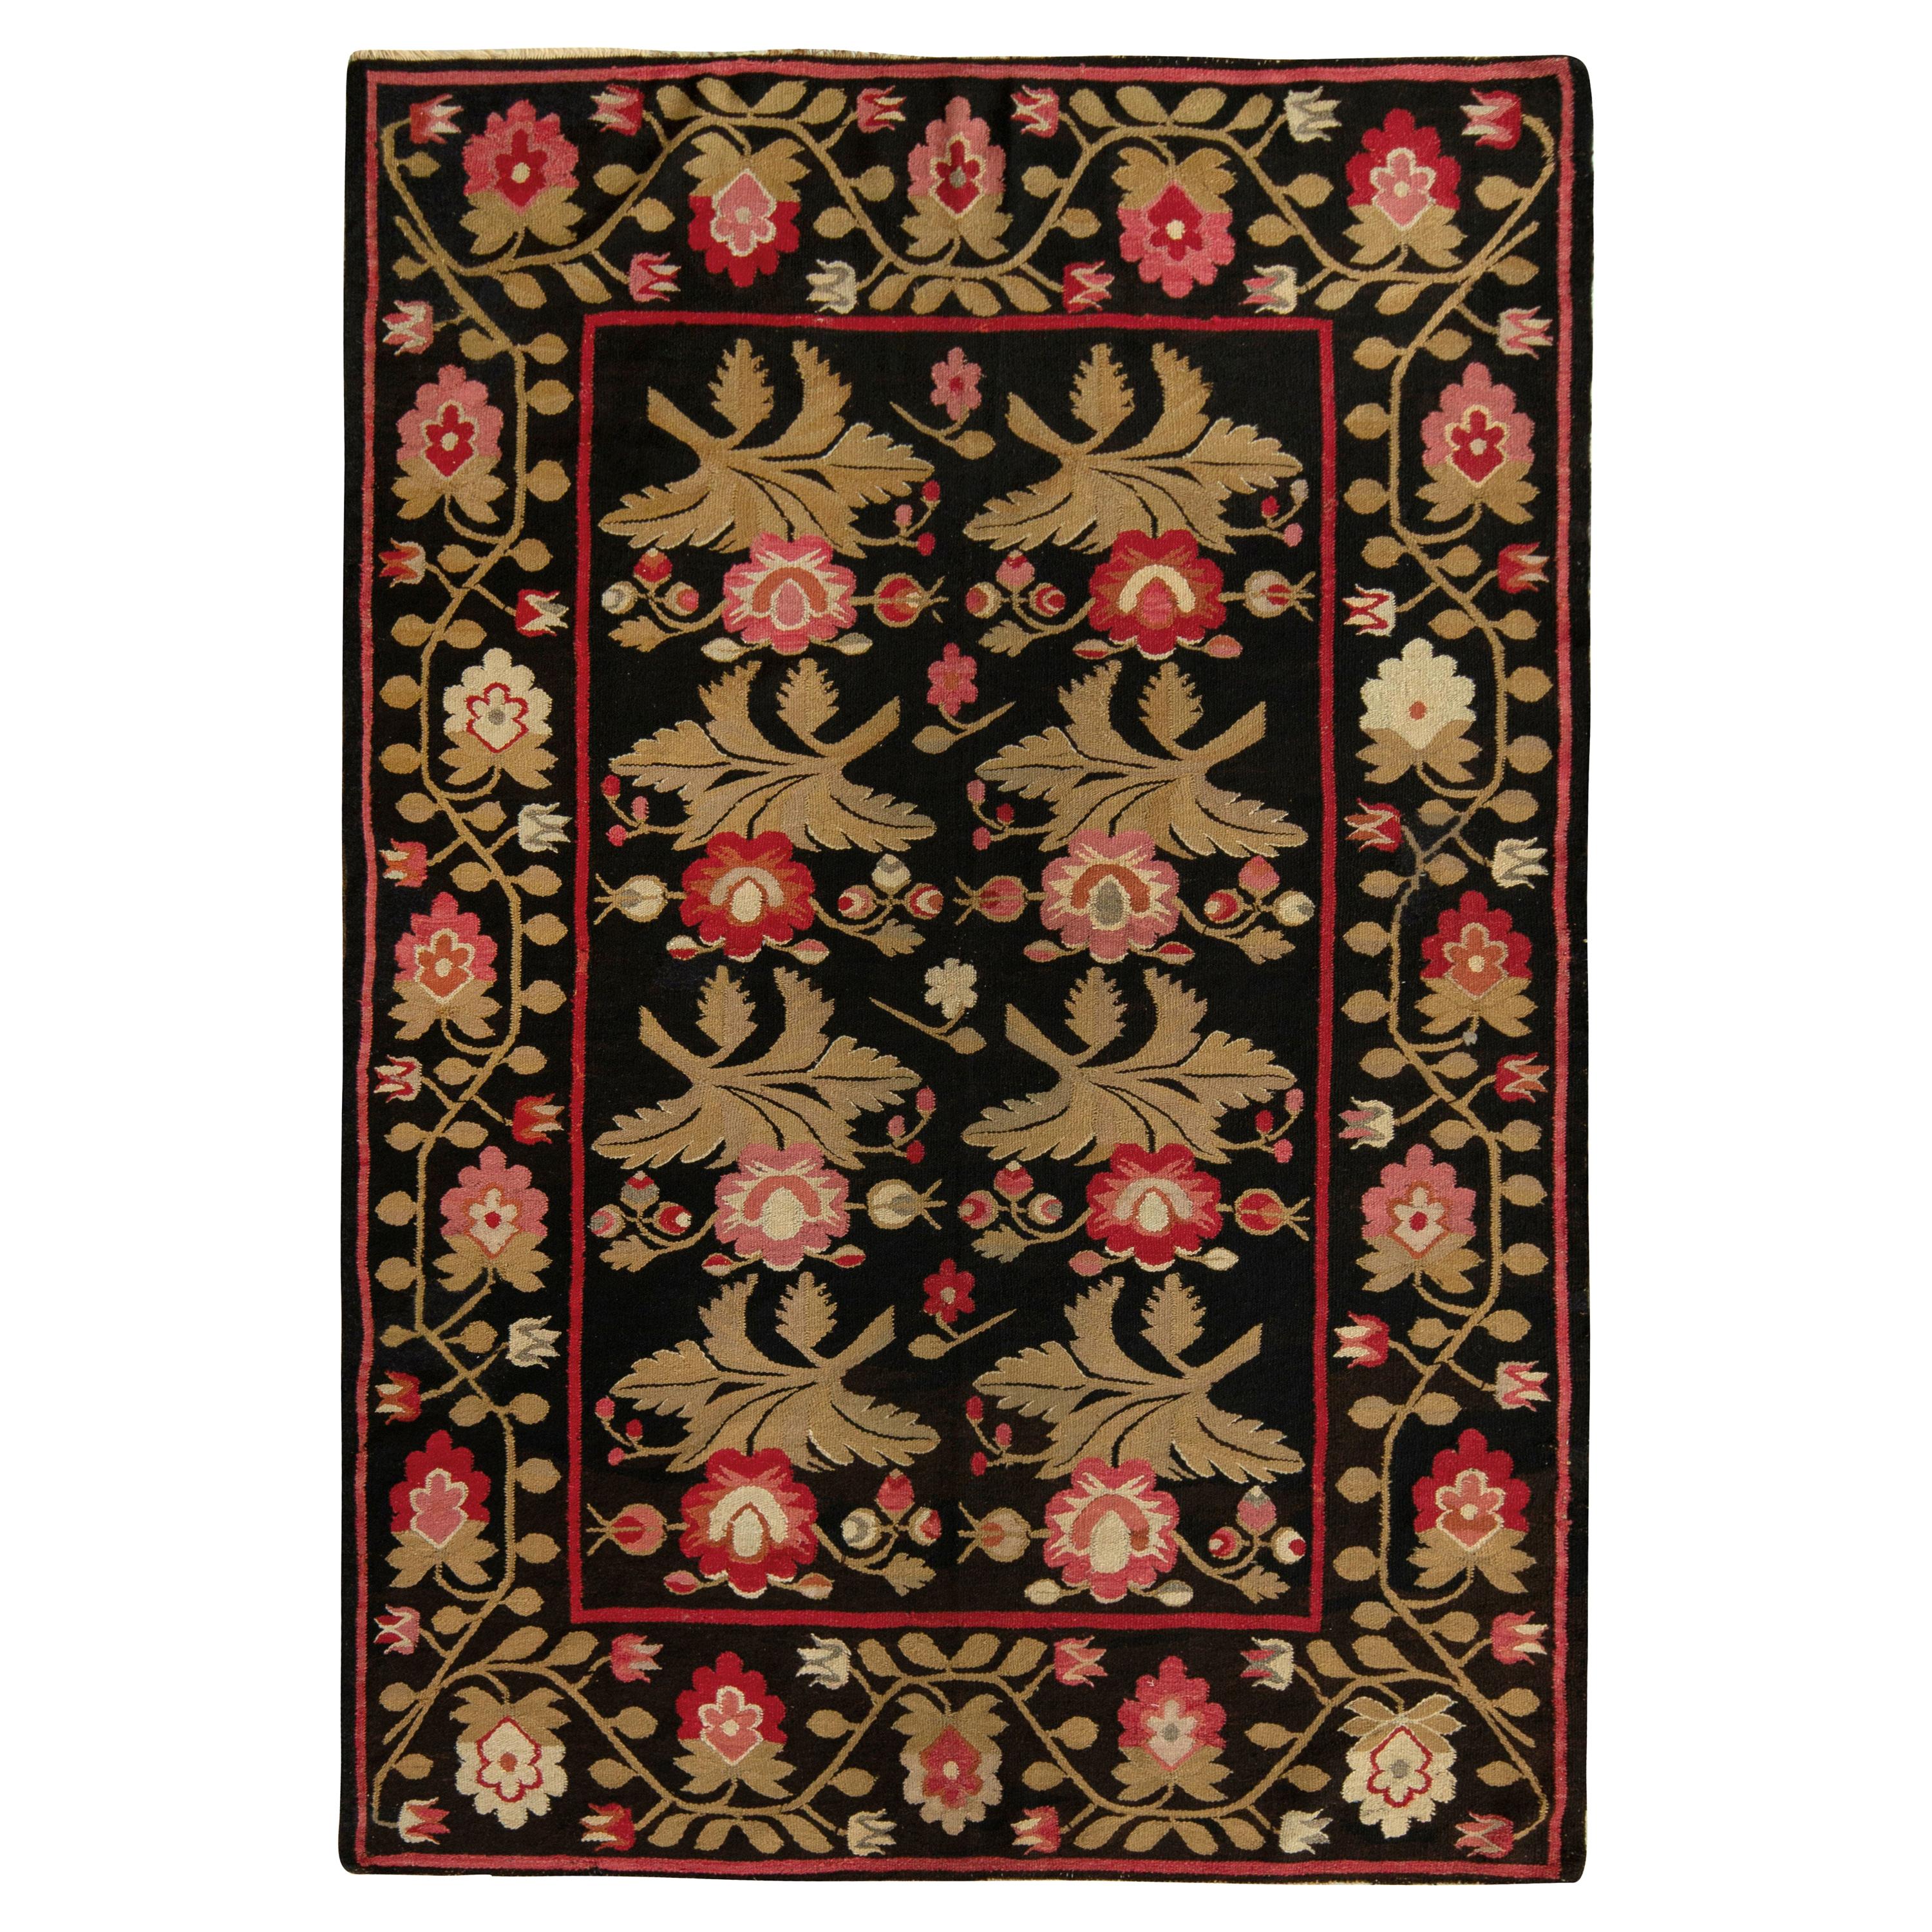 Antiker bessarabischer Kelim-Teppich in Schwarz mit rotem Blumenmuster von Teppich & Kelim